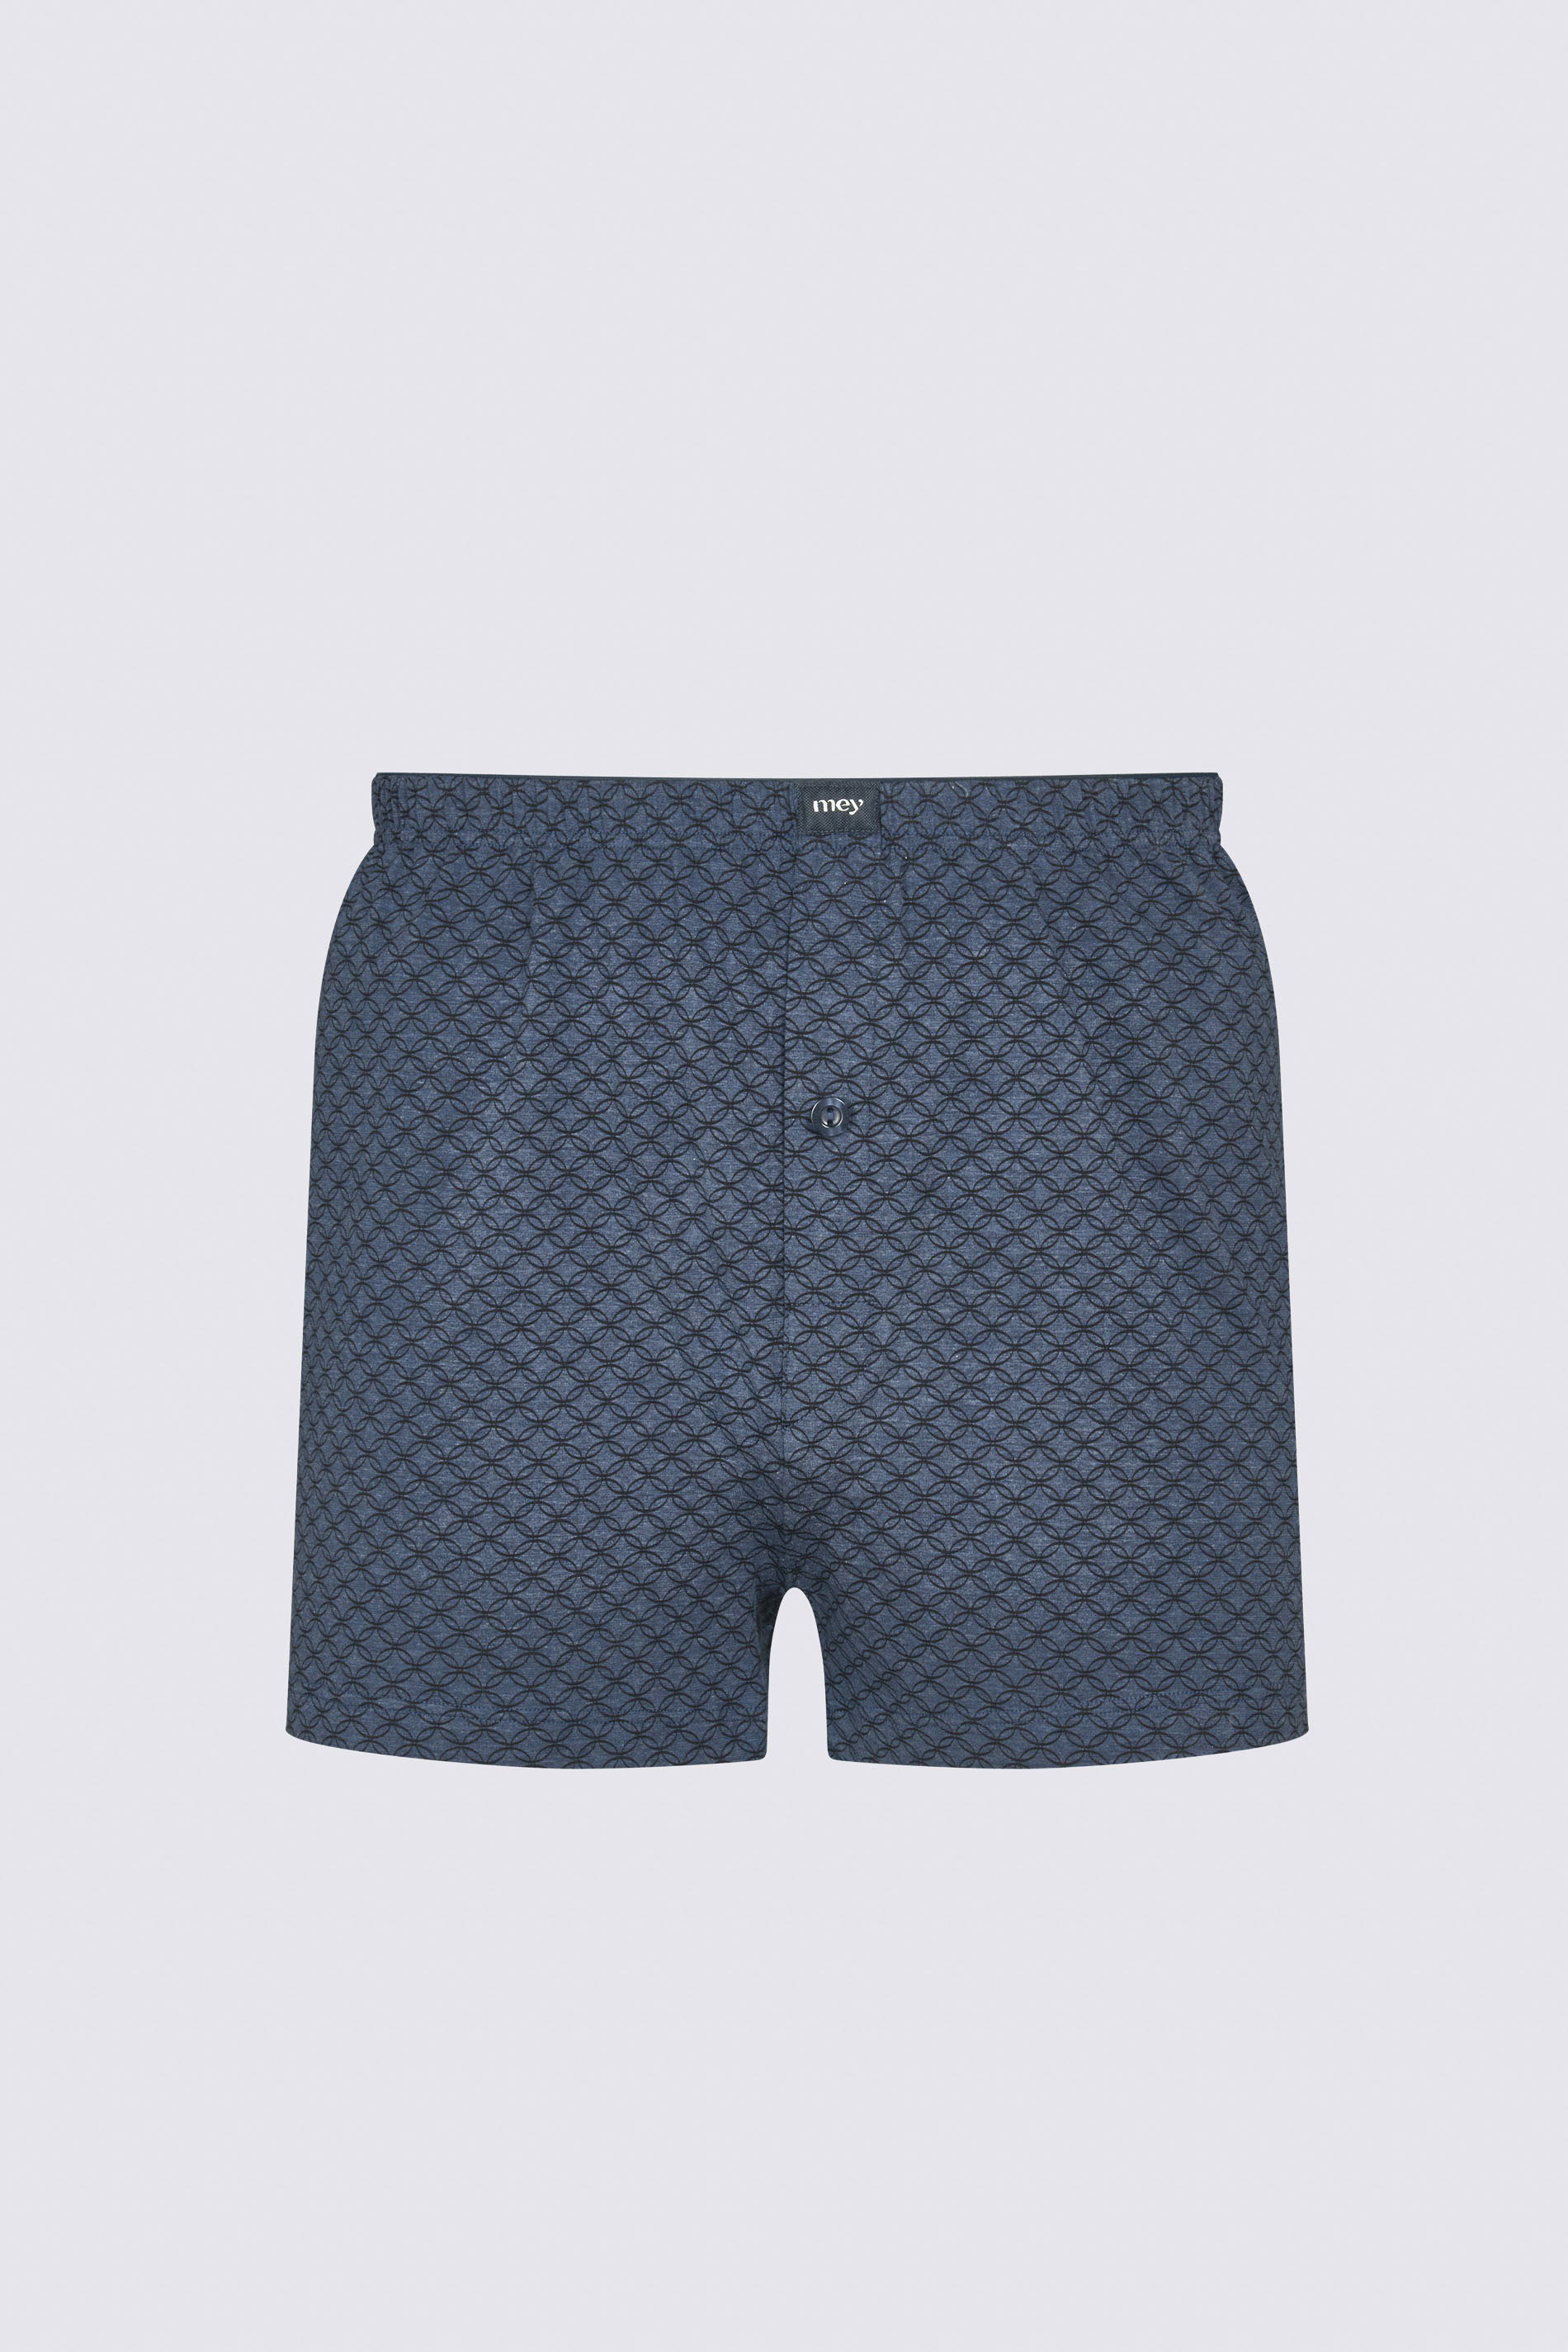 Boxer shorts Denim Blue Serie Circles Cut Out | mey®